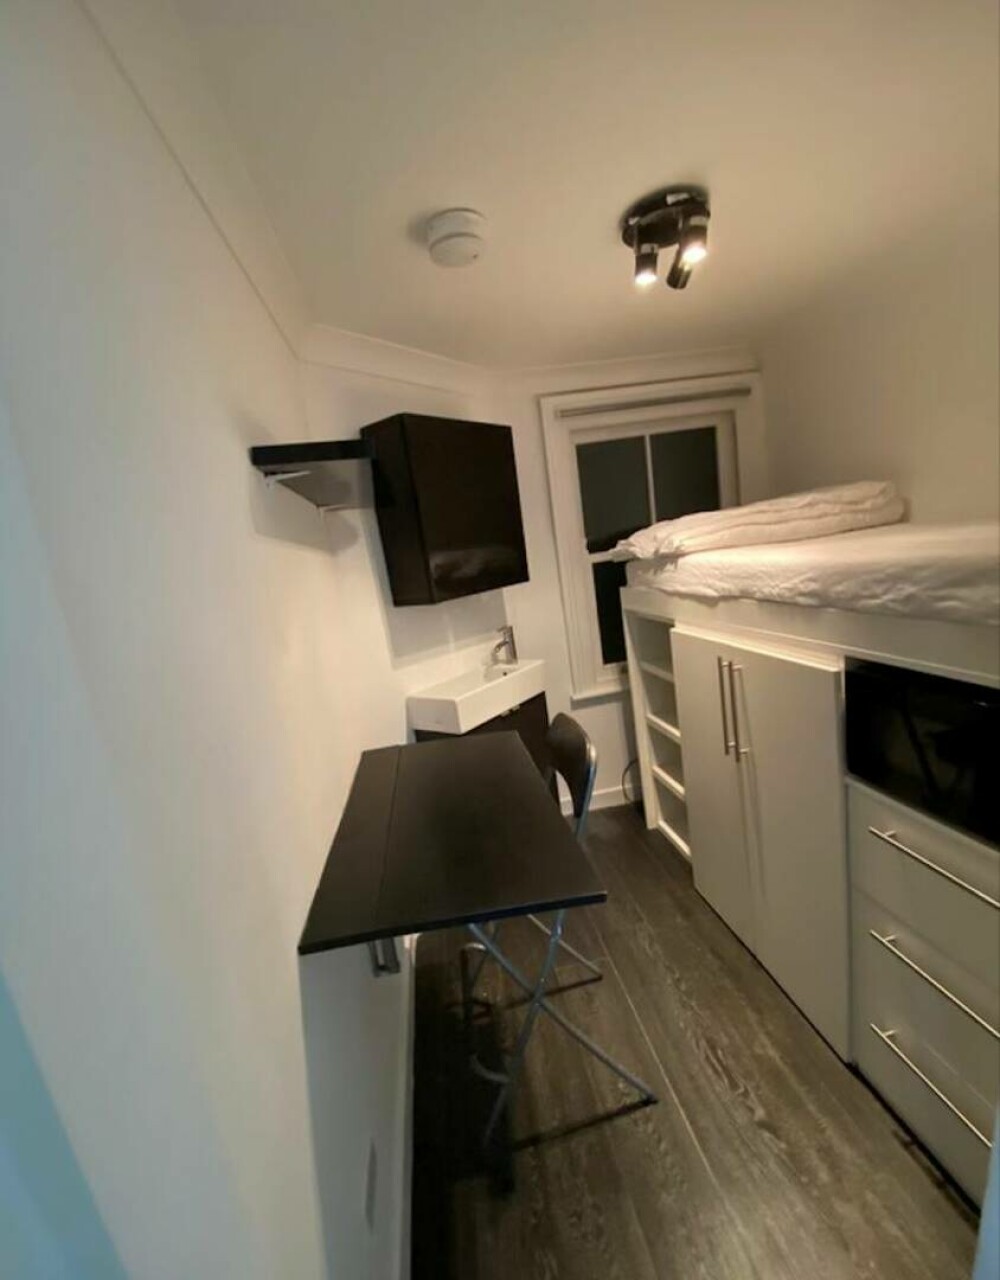 Cel mai mic apartament din Londra a fost scos la vânzare pentru 50.000 de lire. Cum arată locuința de 7 mp GALERIE FOTO - Imaginea 8